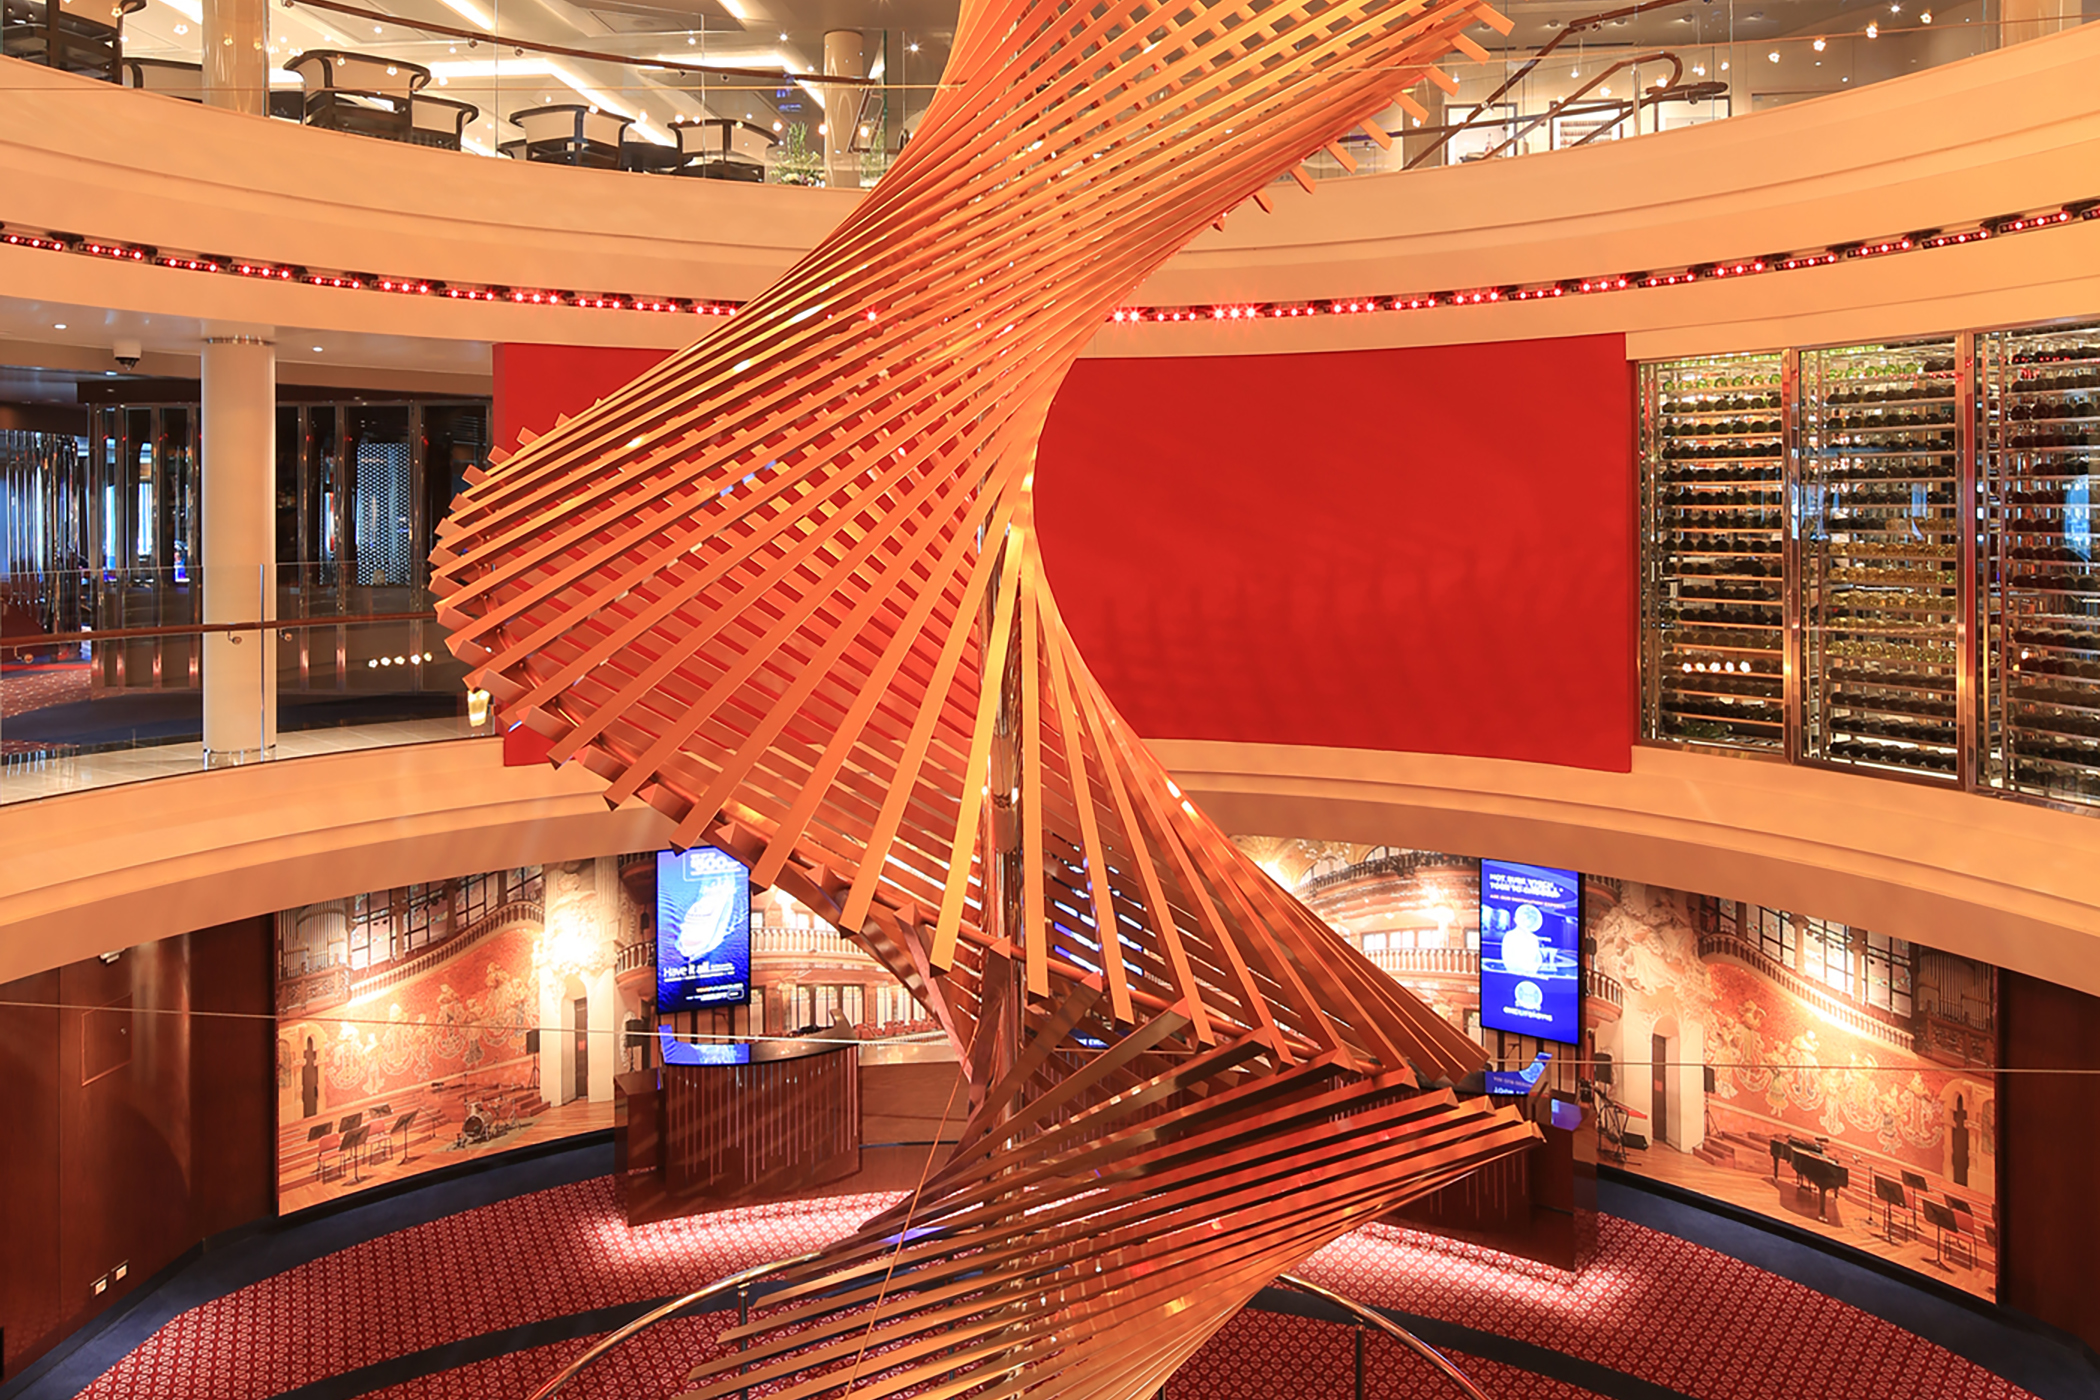 “Harps,” a 7.5-ton stainless steel sculpture in Rotterdam’s Atrium spans three decks